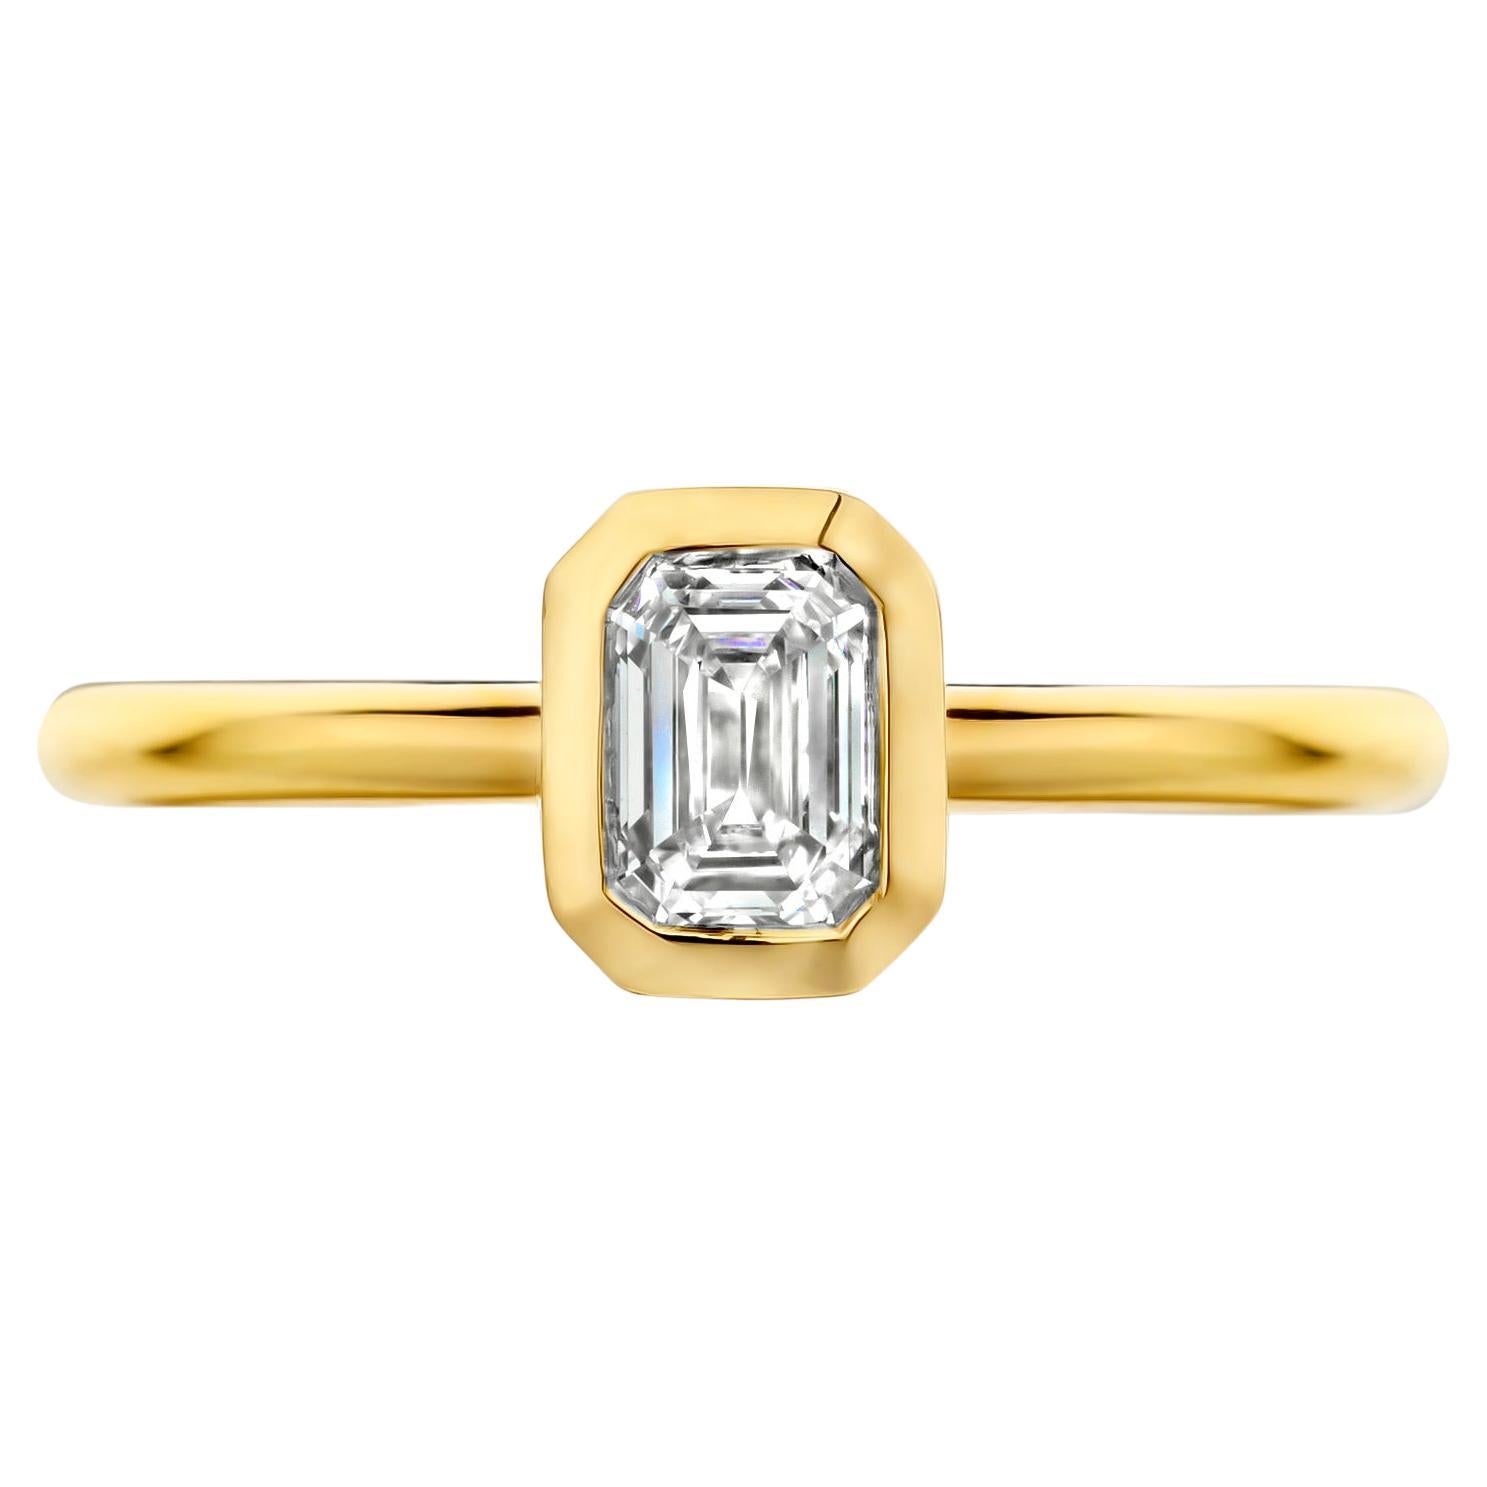 18 karat Gold Yellow Gold Diamond Engagement Ring